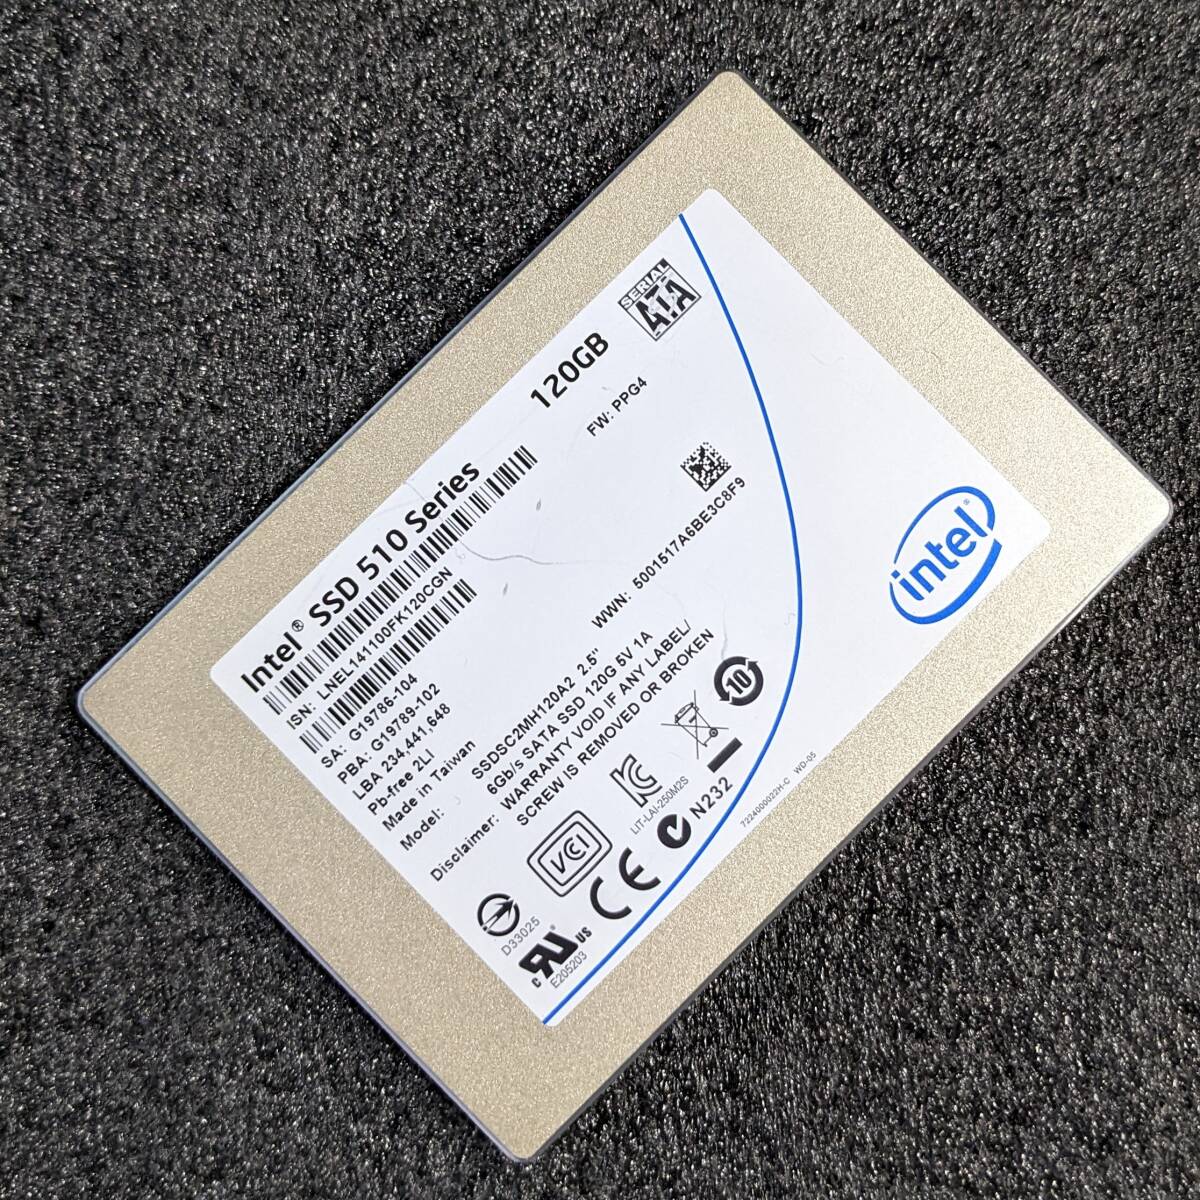 【中古】Intel SSD 510 Series 120GB SSDSC2MH120A2 [2.5インチ SATA3 9mm厚 MLC]